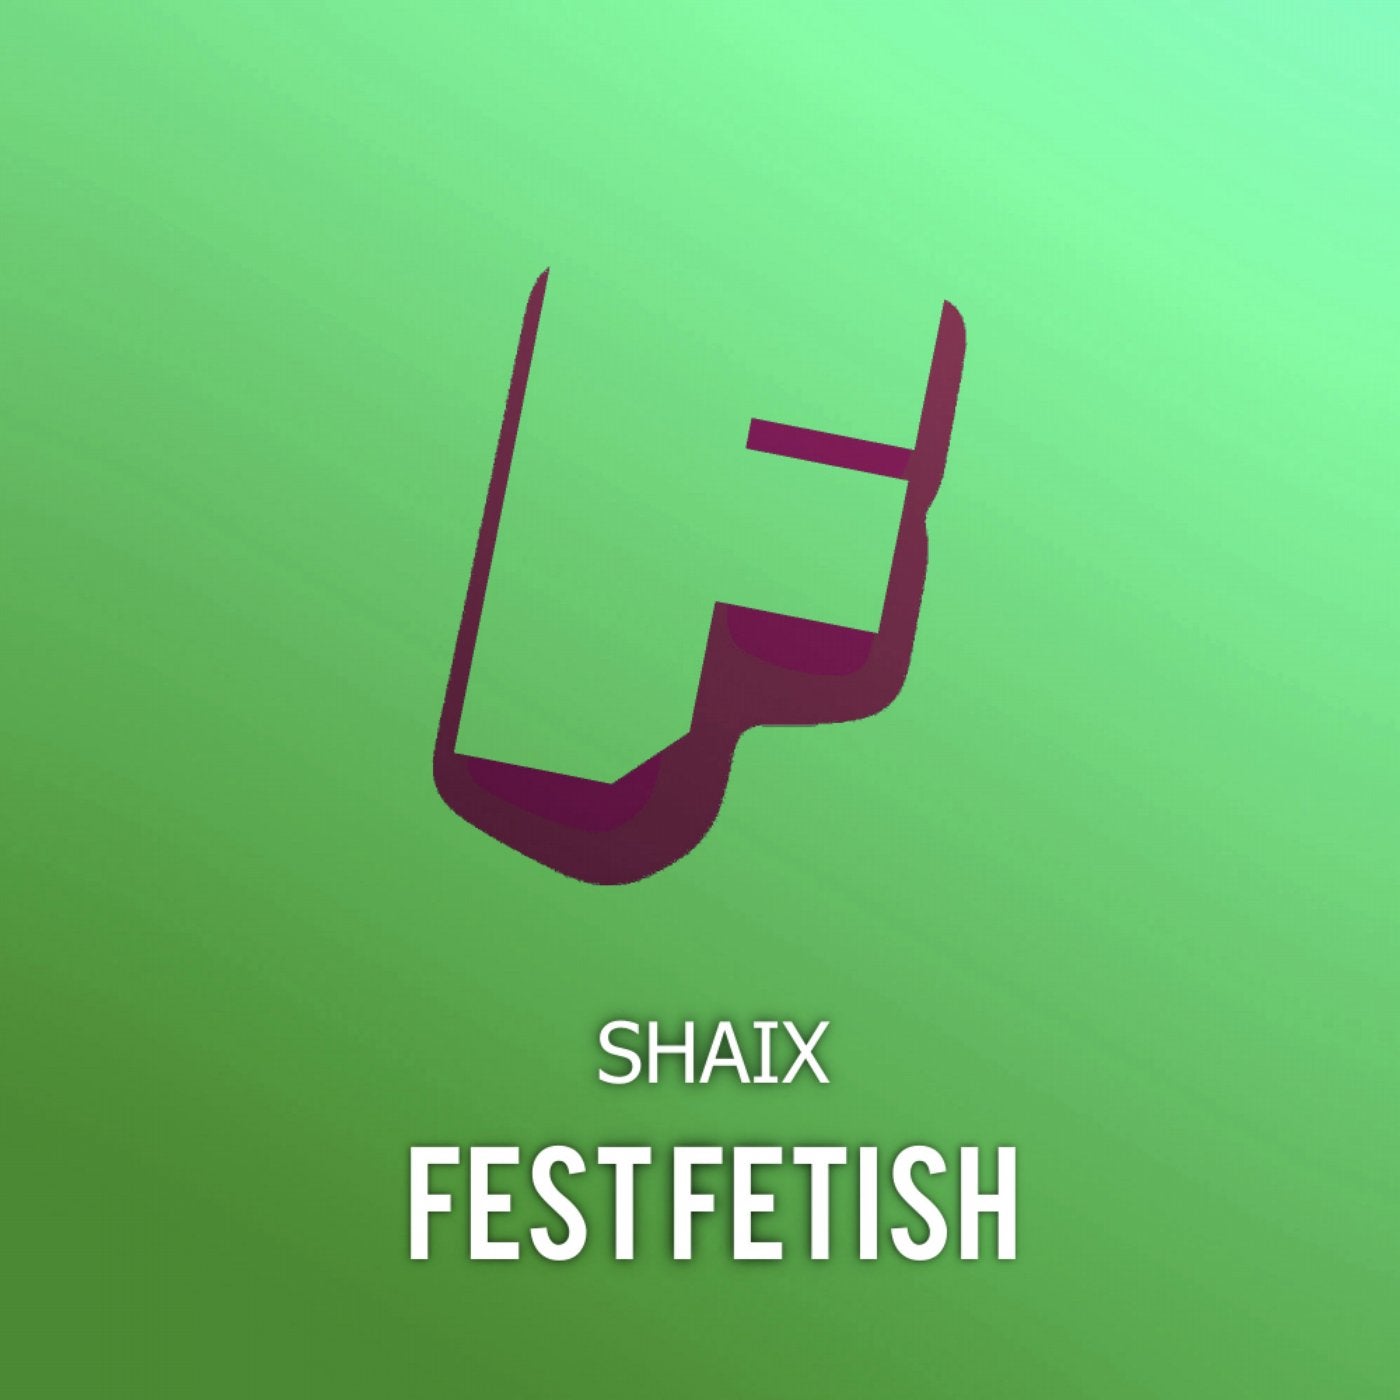 Fest Fetish